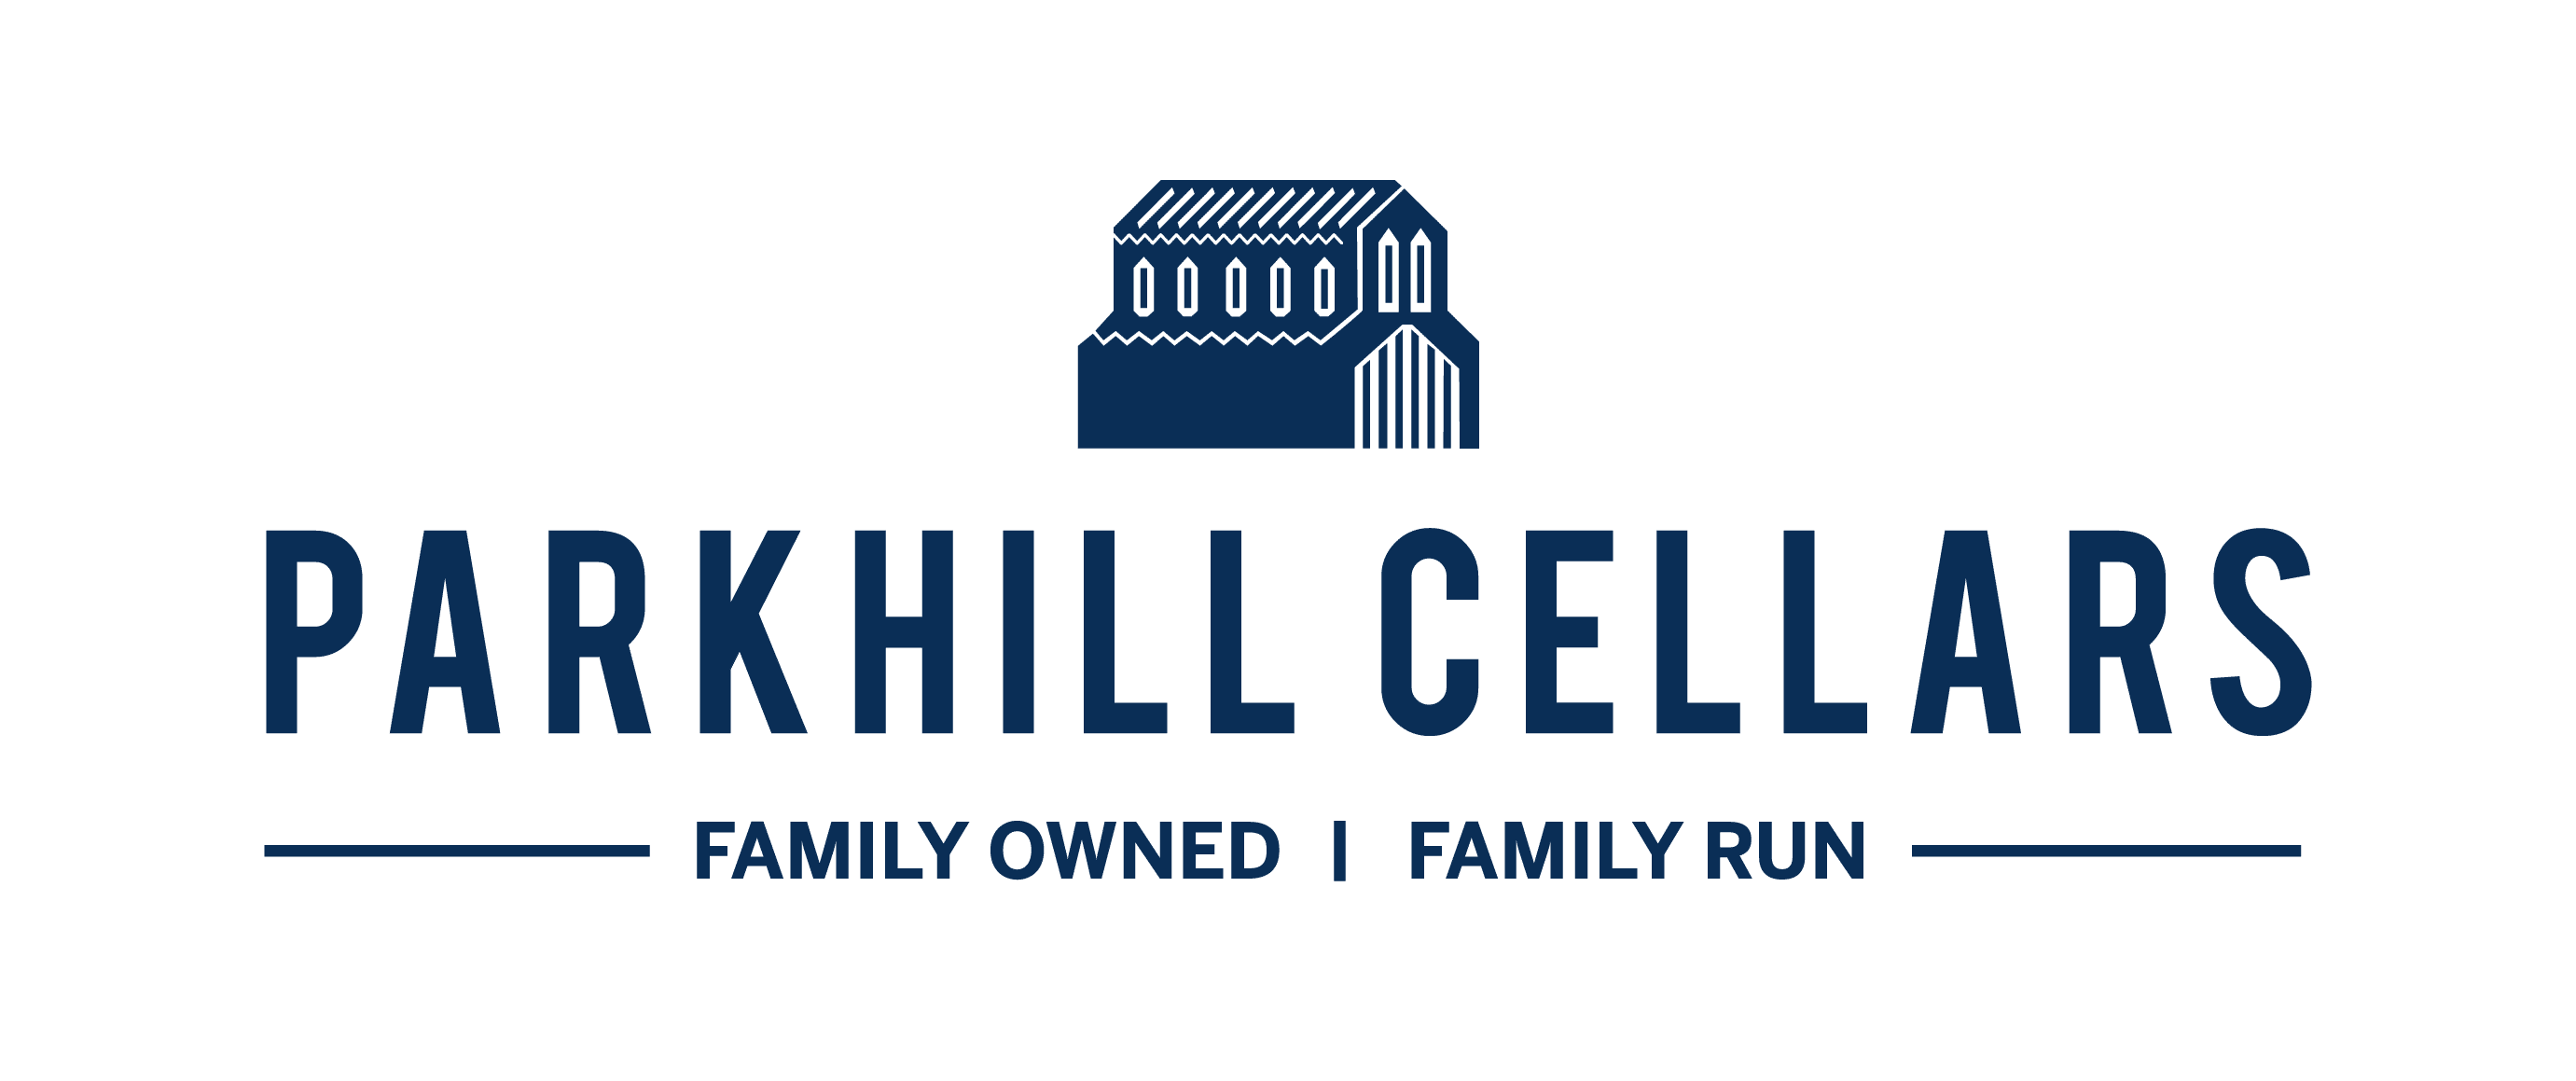 Parkhill Cellars